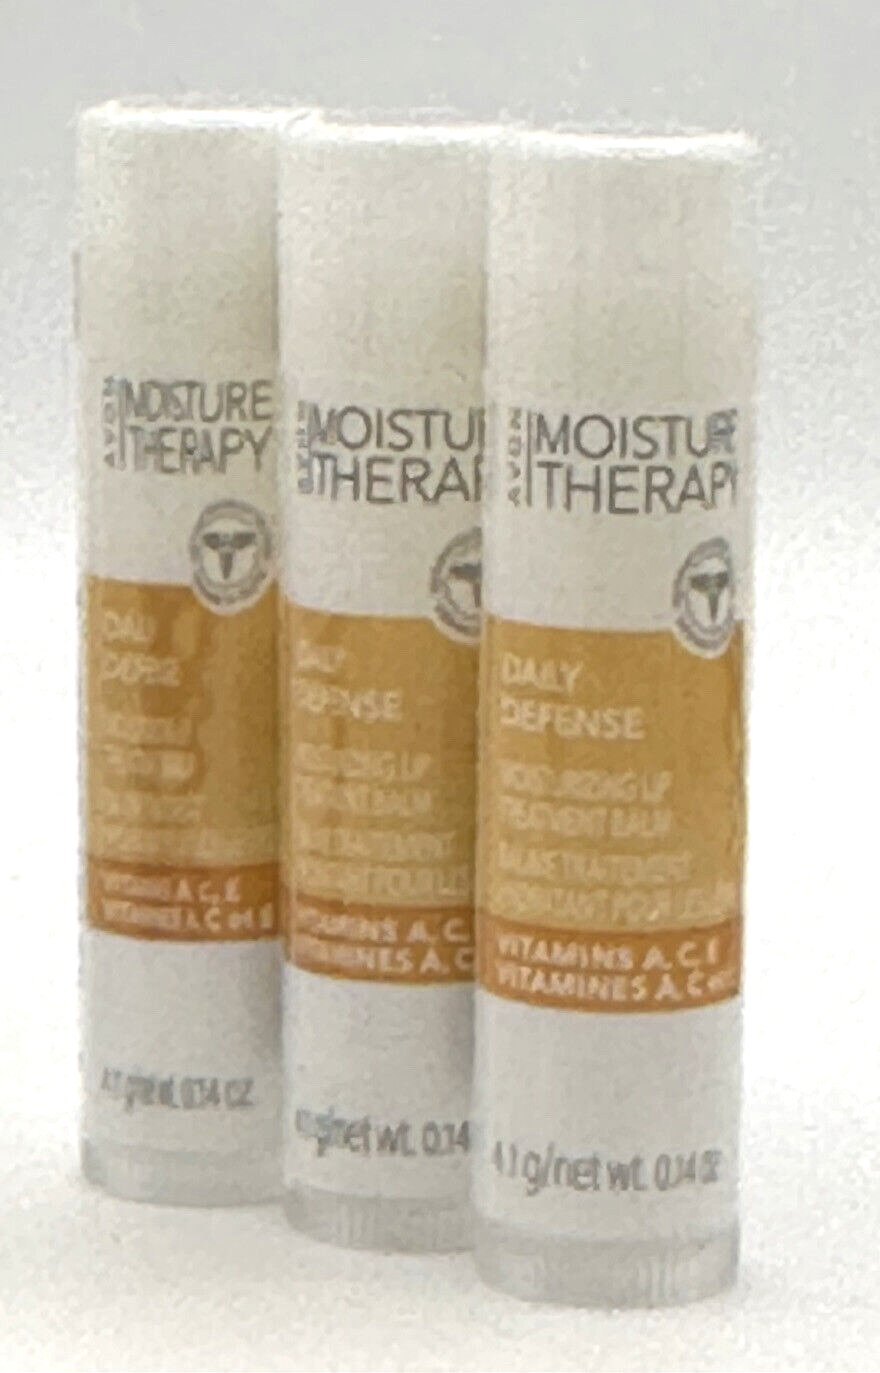 Primary image for 3 AVON Moisture Therapy Daily Defense Lip Balm W/Vitamin A,E,C SEALED!!